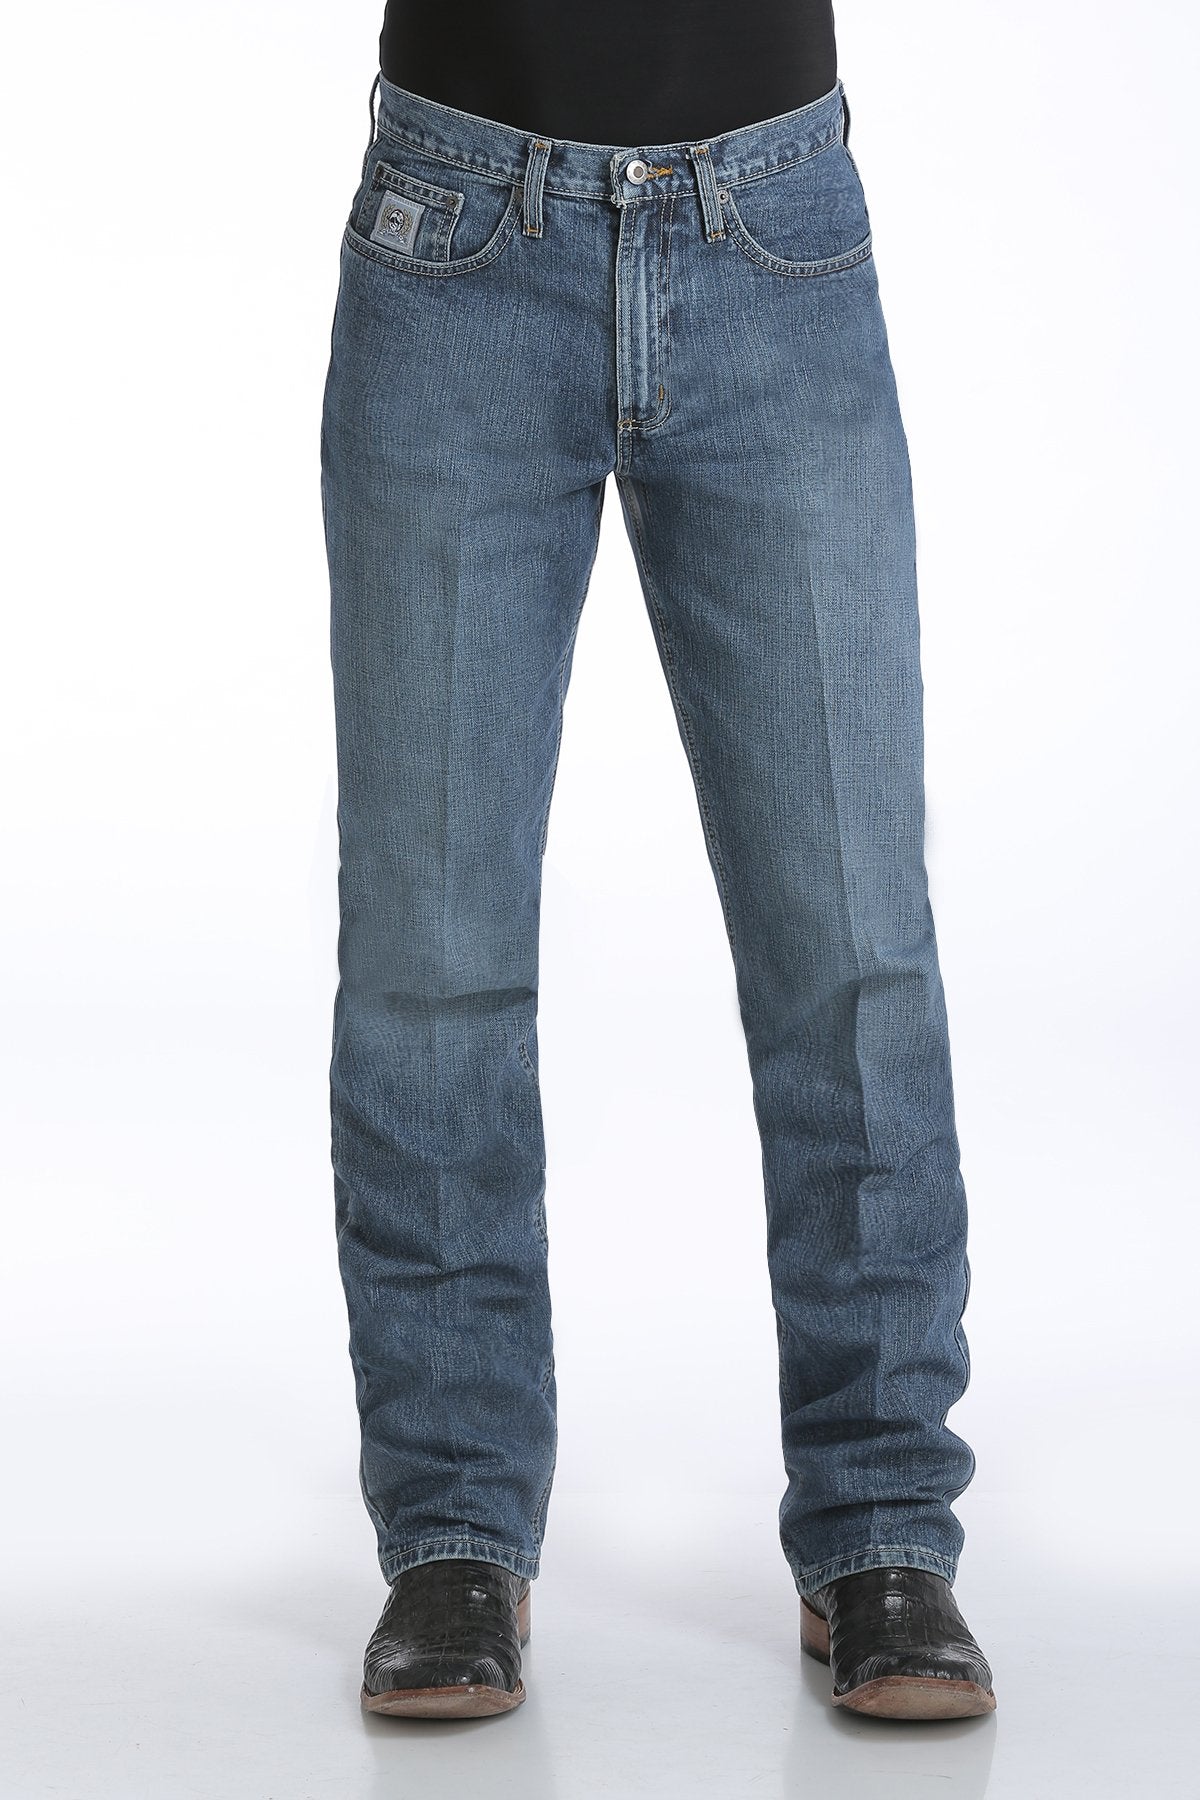 Cinch Mens Silver Label Slim Fit Jeans 36 Inch Leg (Medium Stonewash)